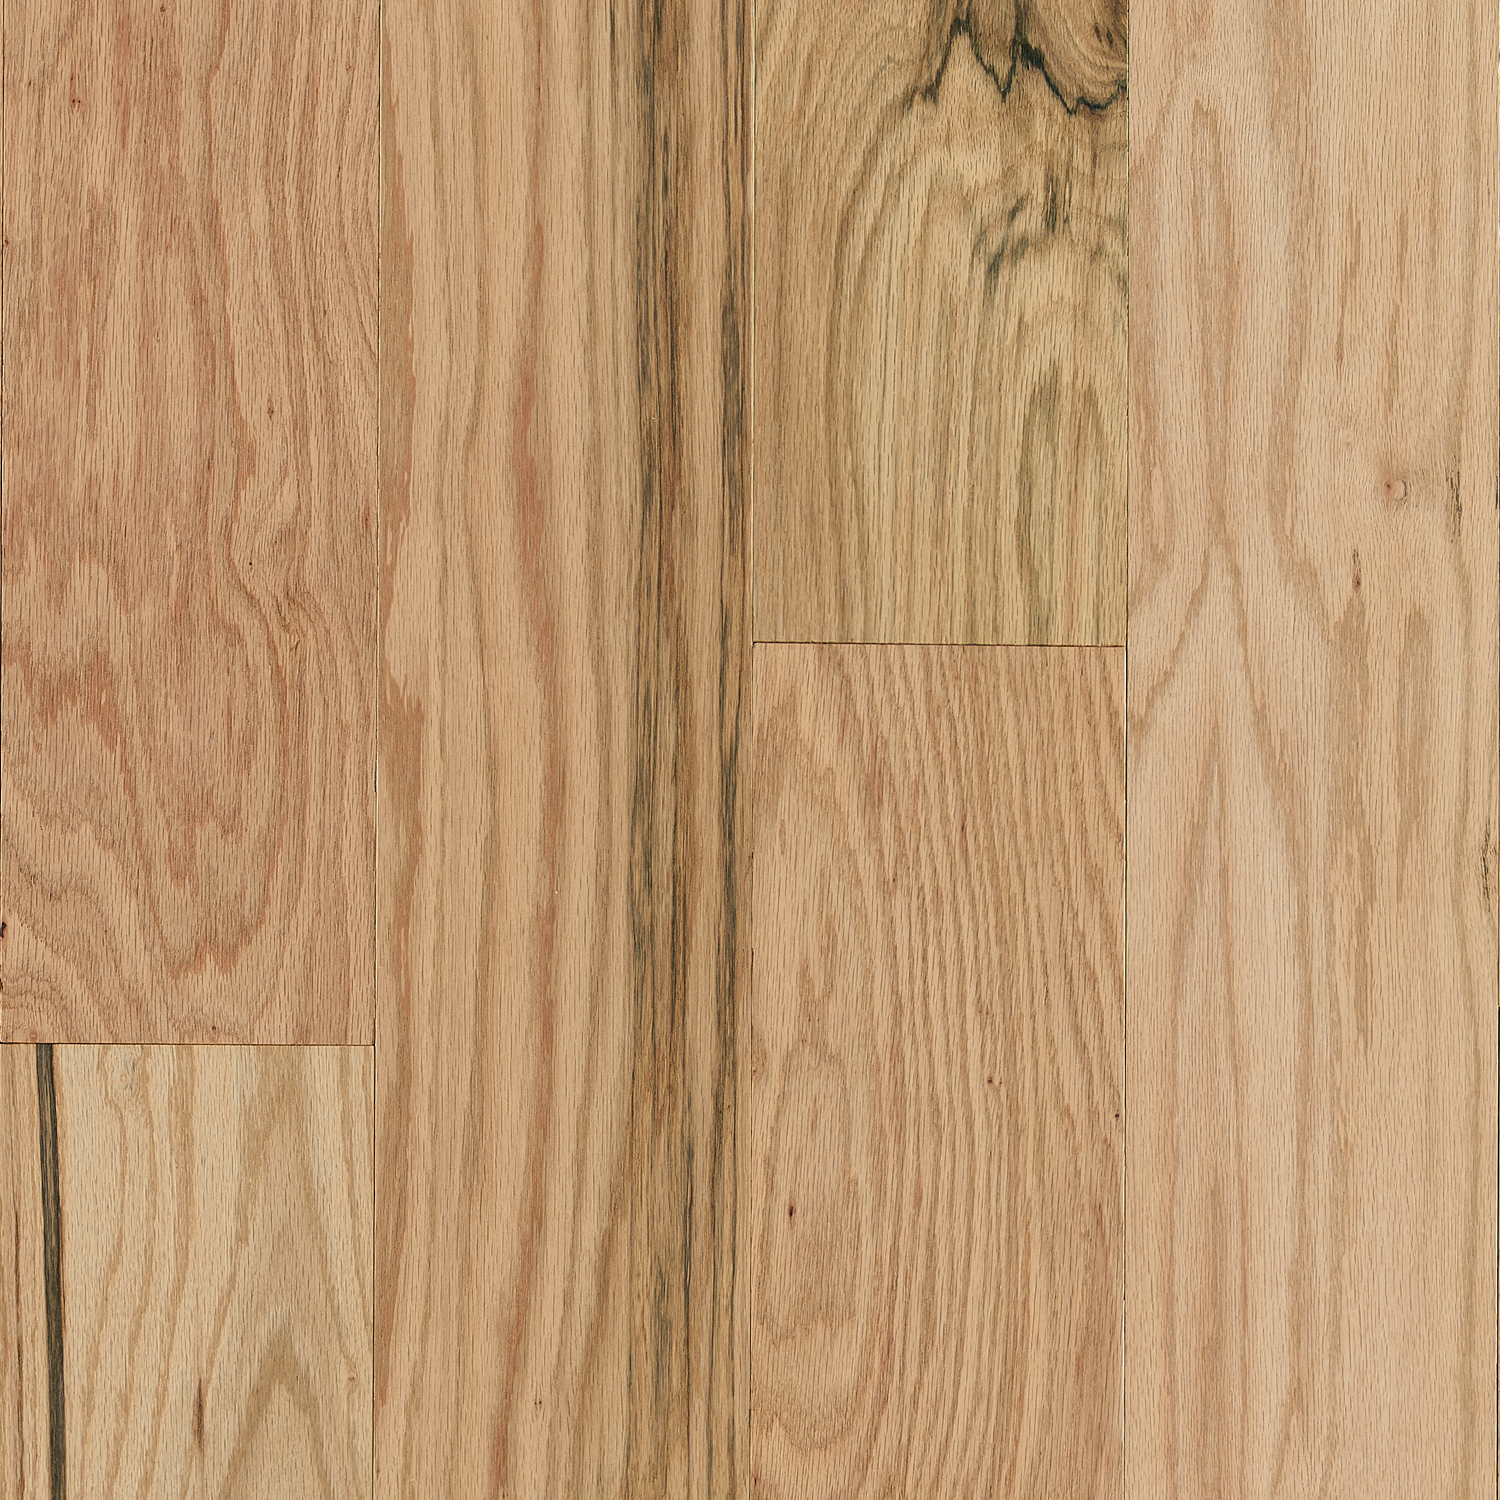 Red Oak Engineered Hardwood Ekah72l01see, 6 Hardwood Flooring